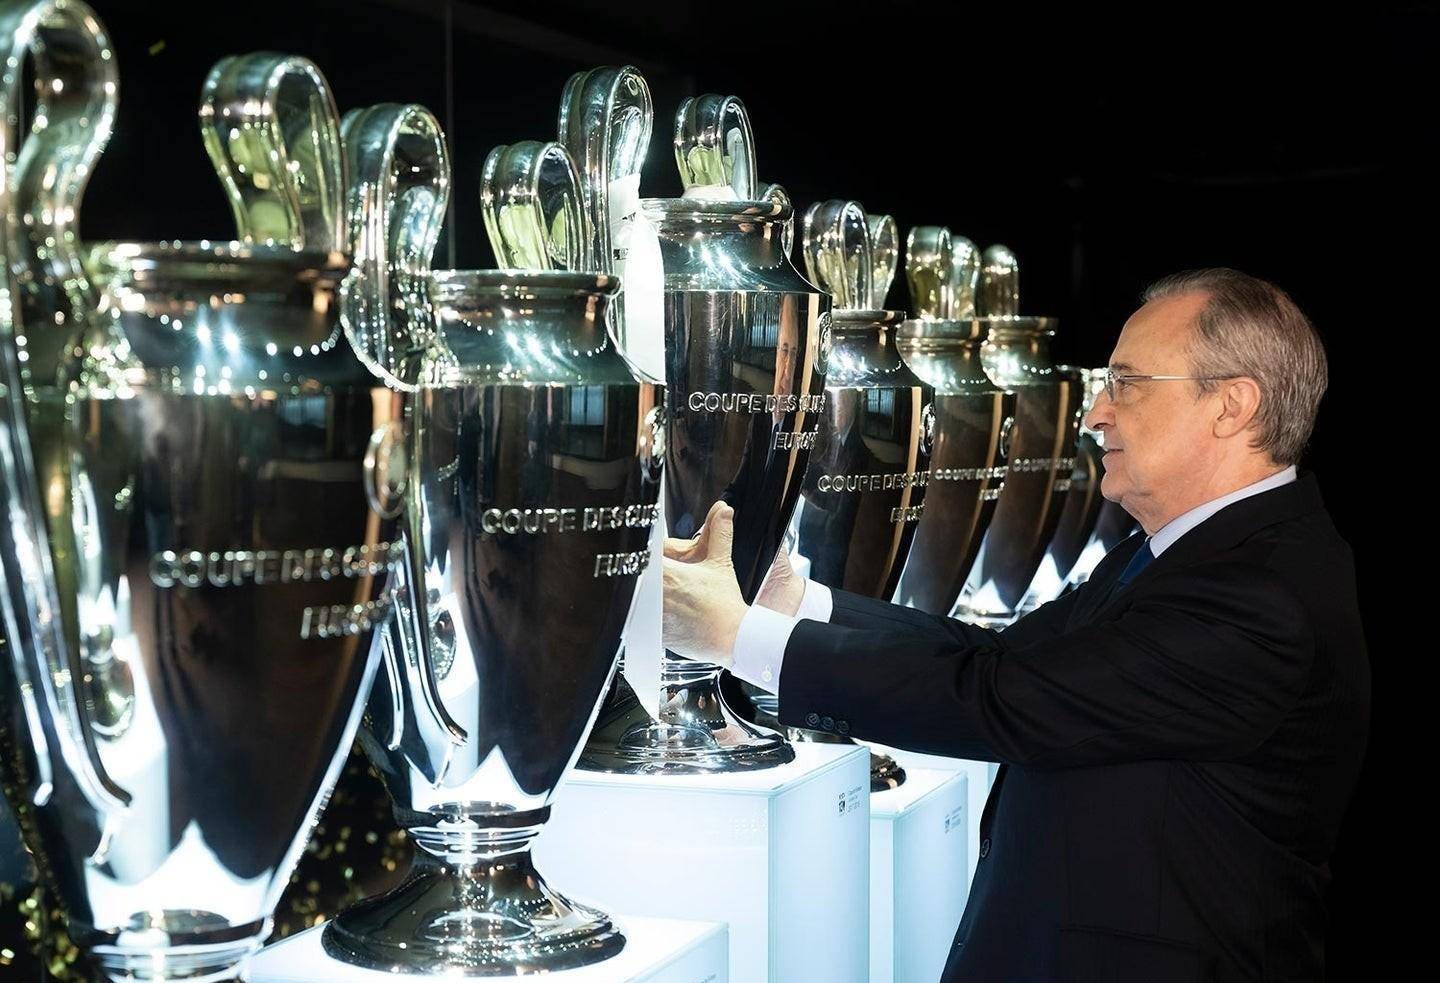 14座欧冠奖杯,8座世俱杯,5座欧洲超级杯,2座欧洲联盟杯,35座联赛冠军